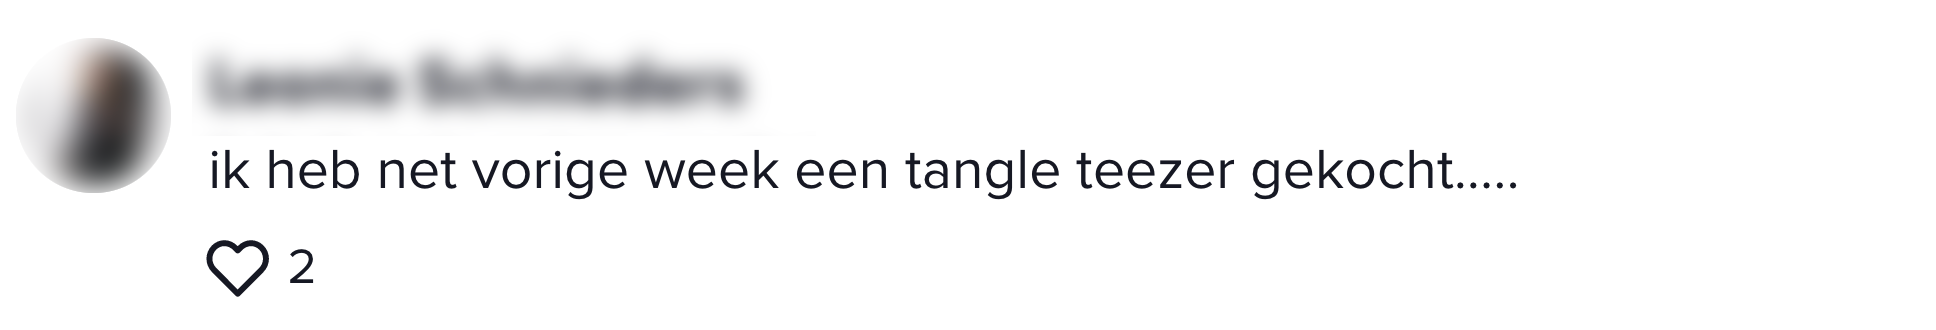 a tangle teezer